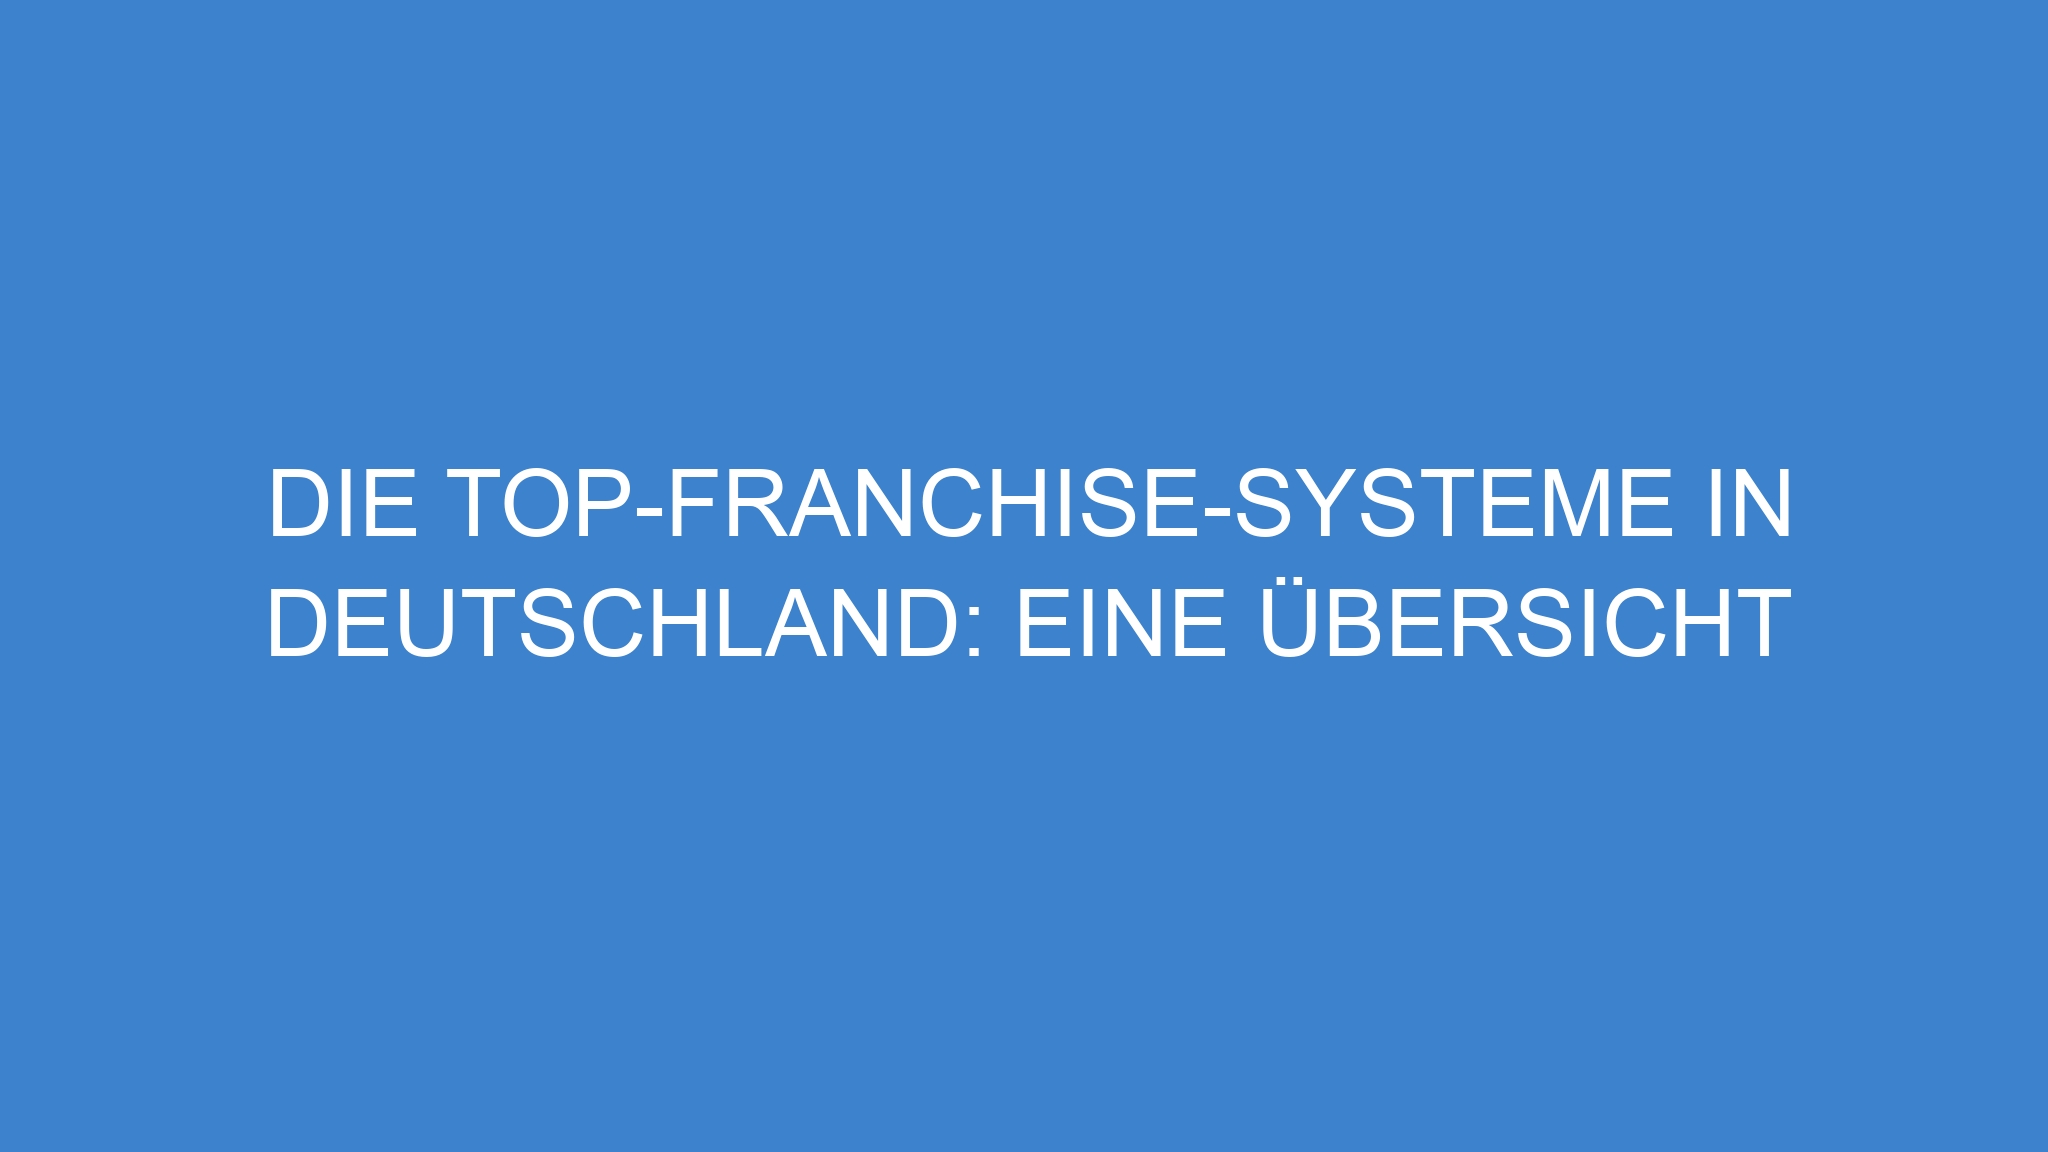 Die Top-Franchise-Systeme in Deutschland: Eine Übersicht